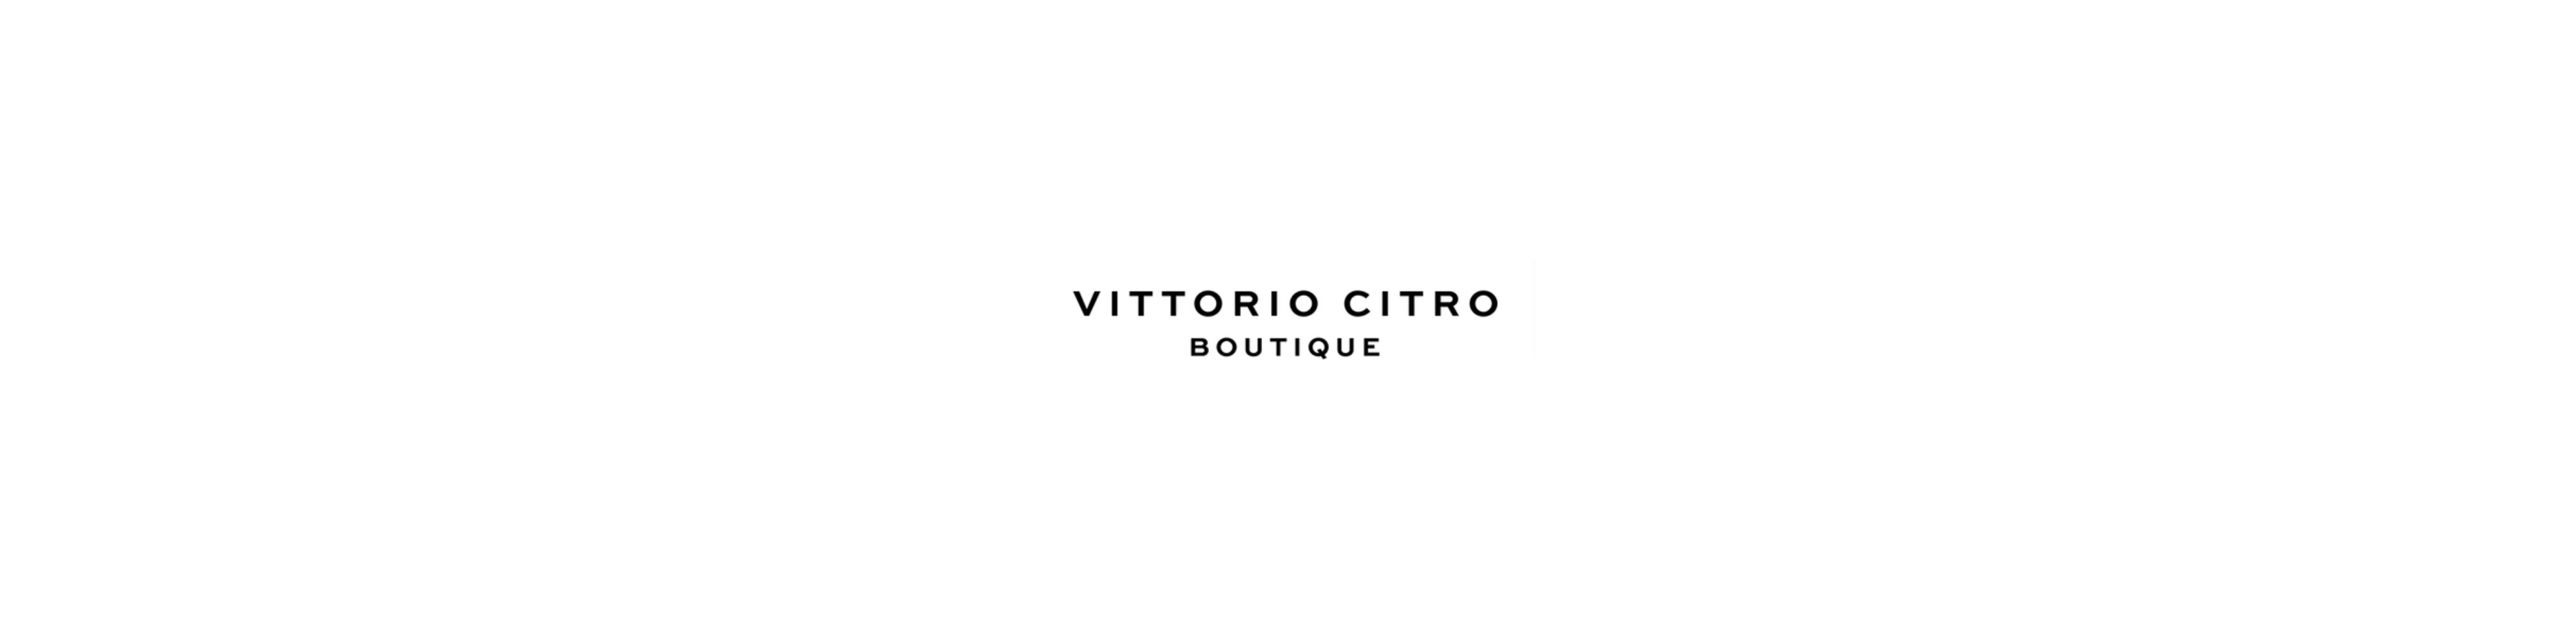 Vittorio Citro (In promozione)